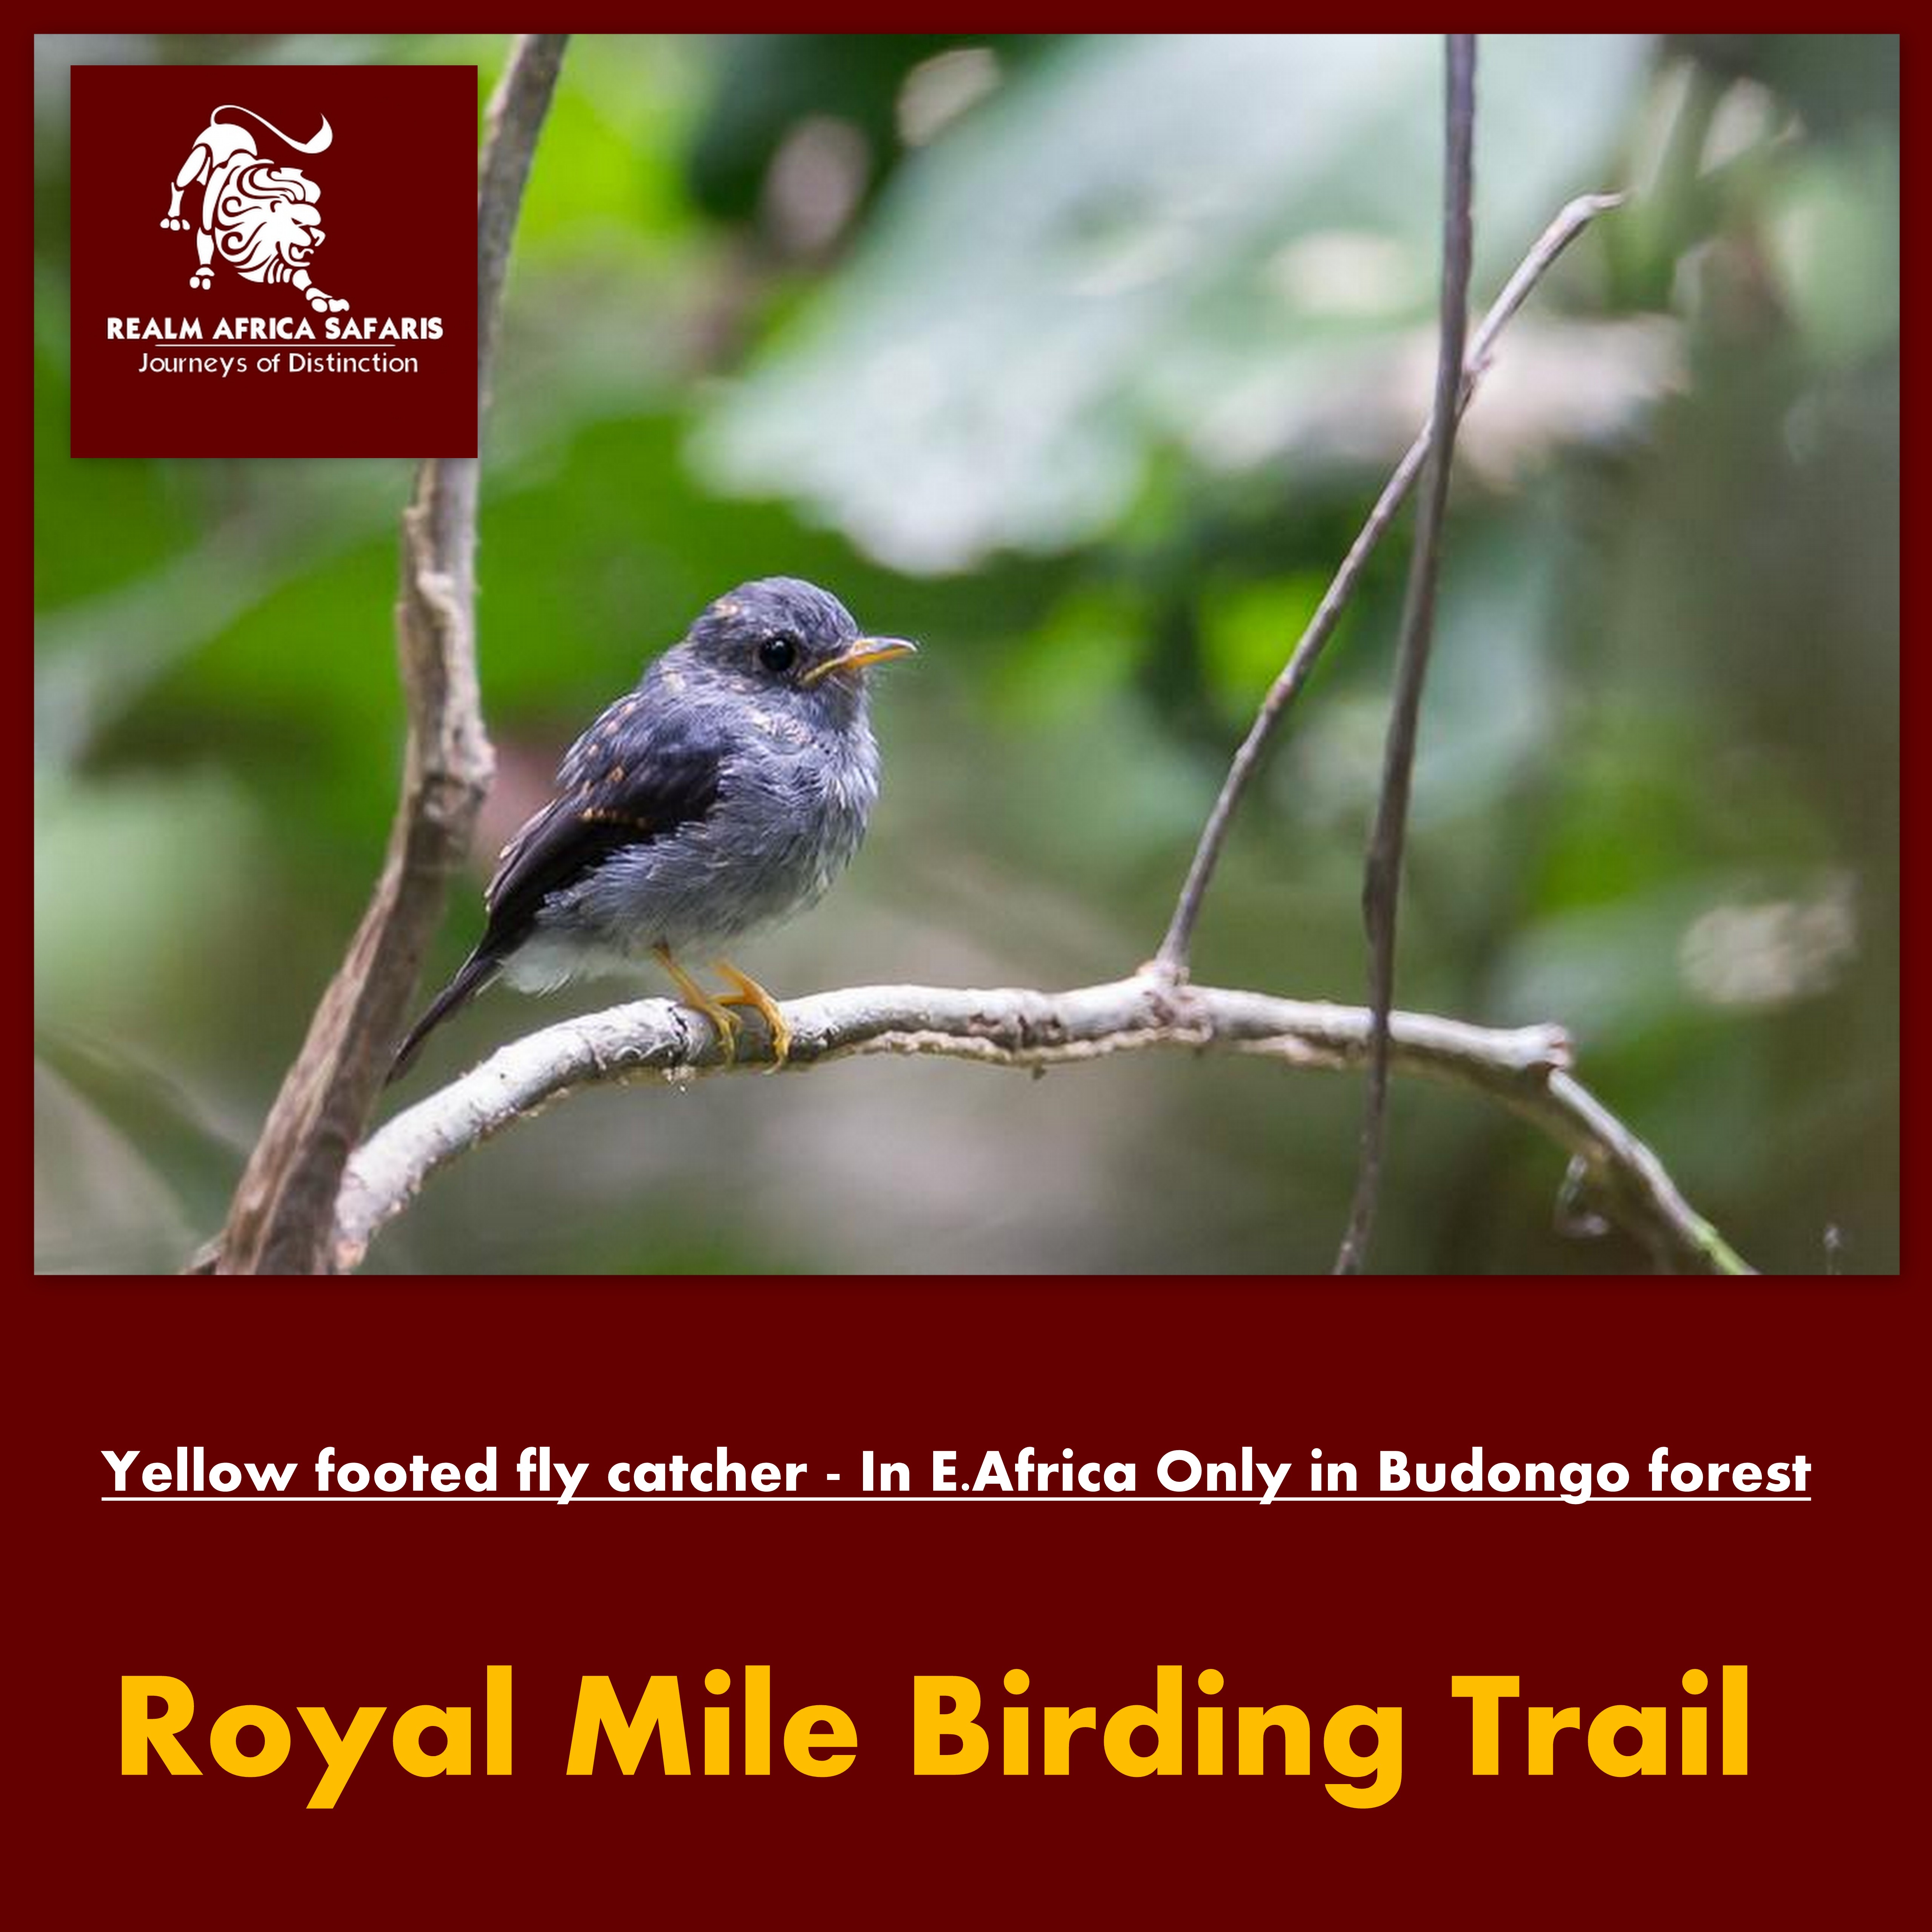 Royal mile Bird Watching Trail